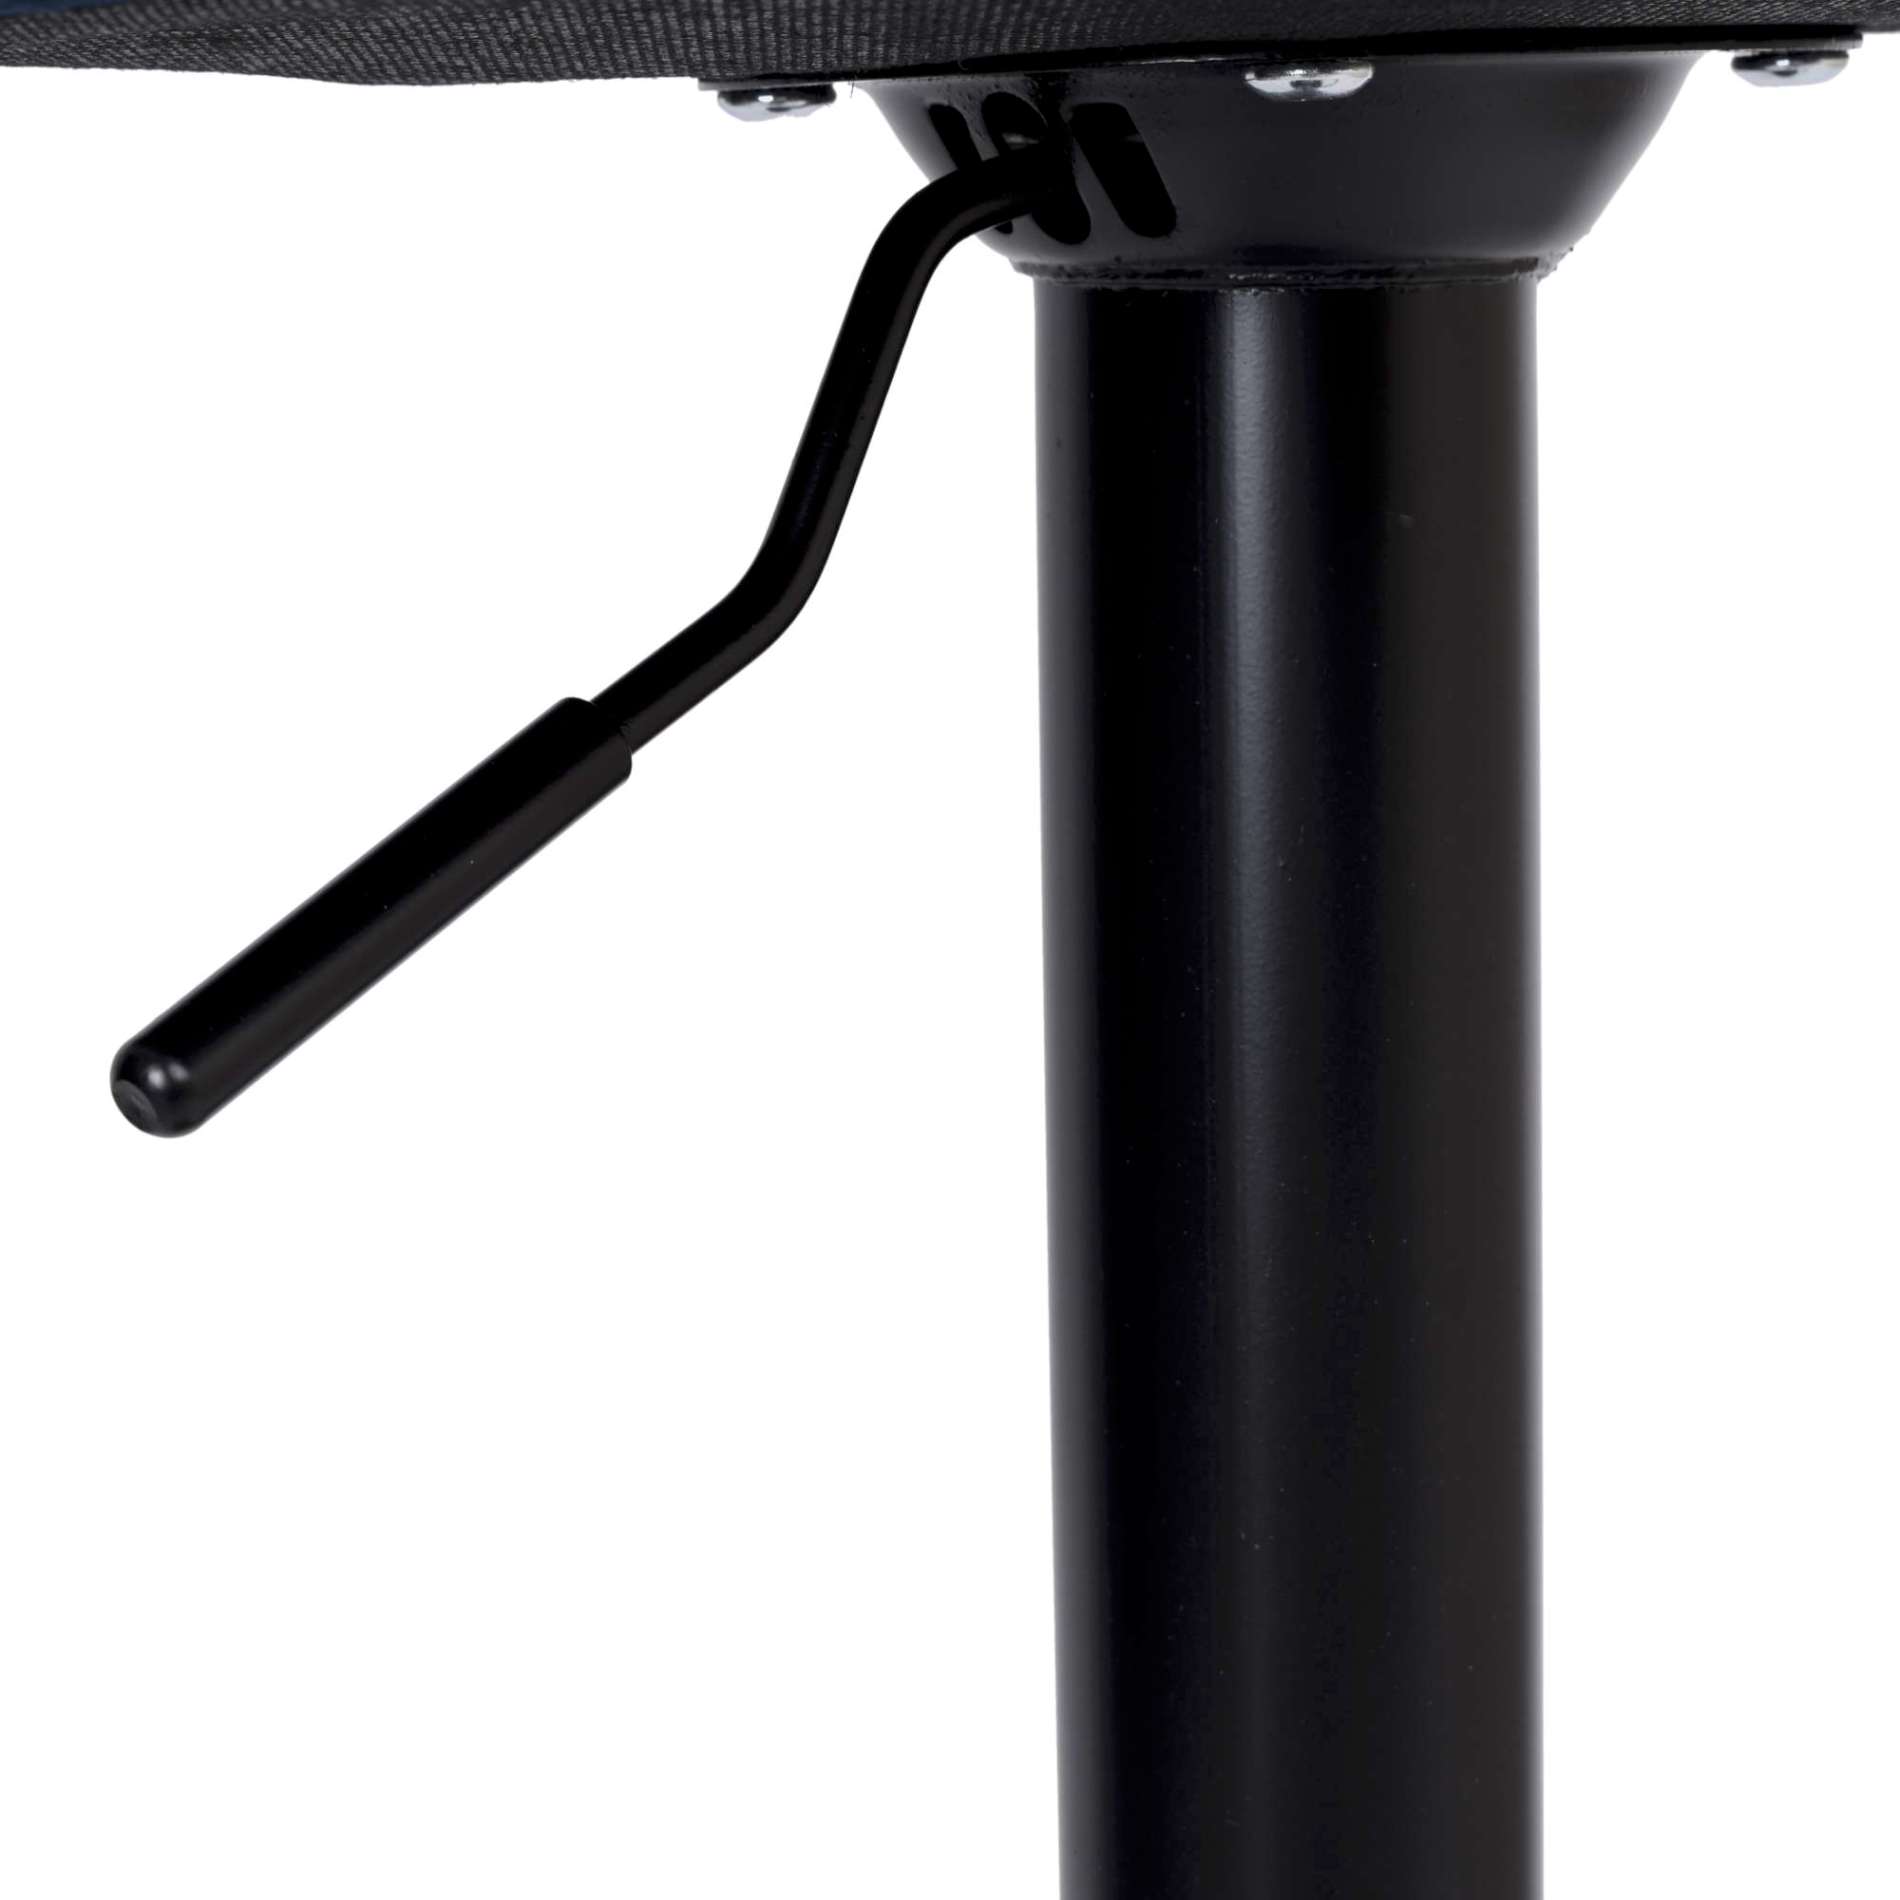 Krzesło barowe CYDRO BLACK welurowe czarne